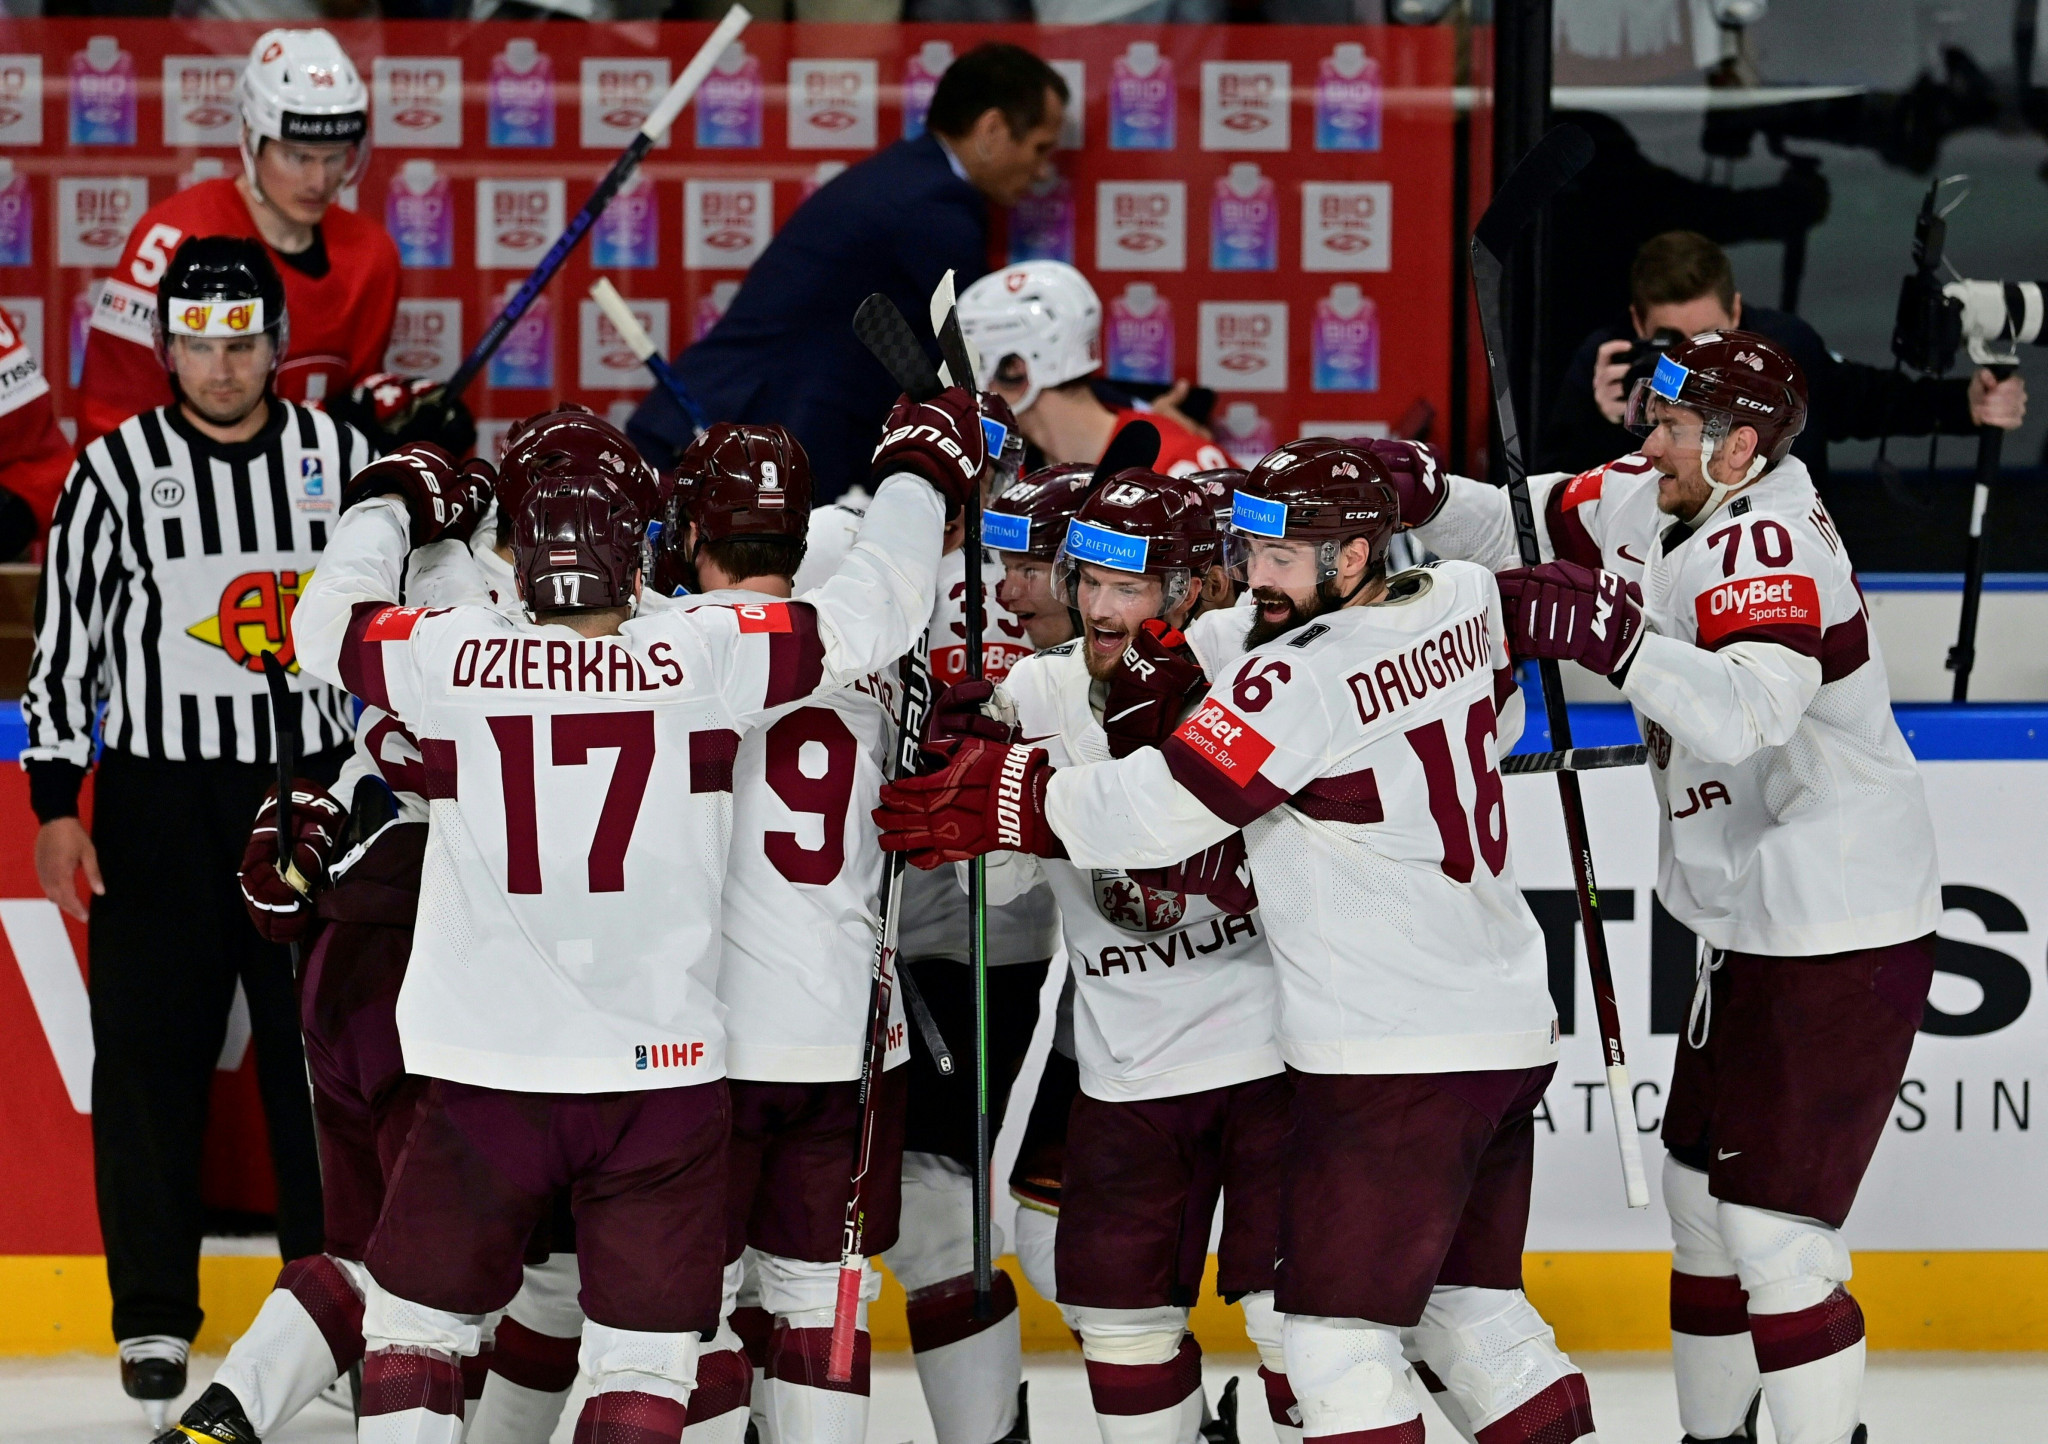 Hosts Latvia down unbeaten Swiss to book quarter-final spot at IIHF World Championship